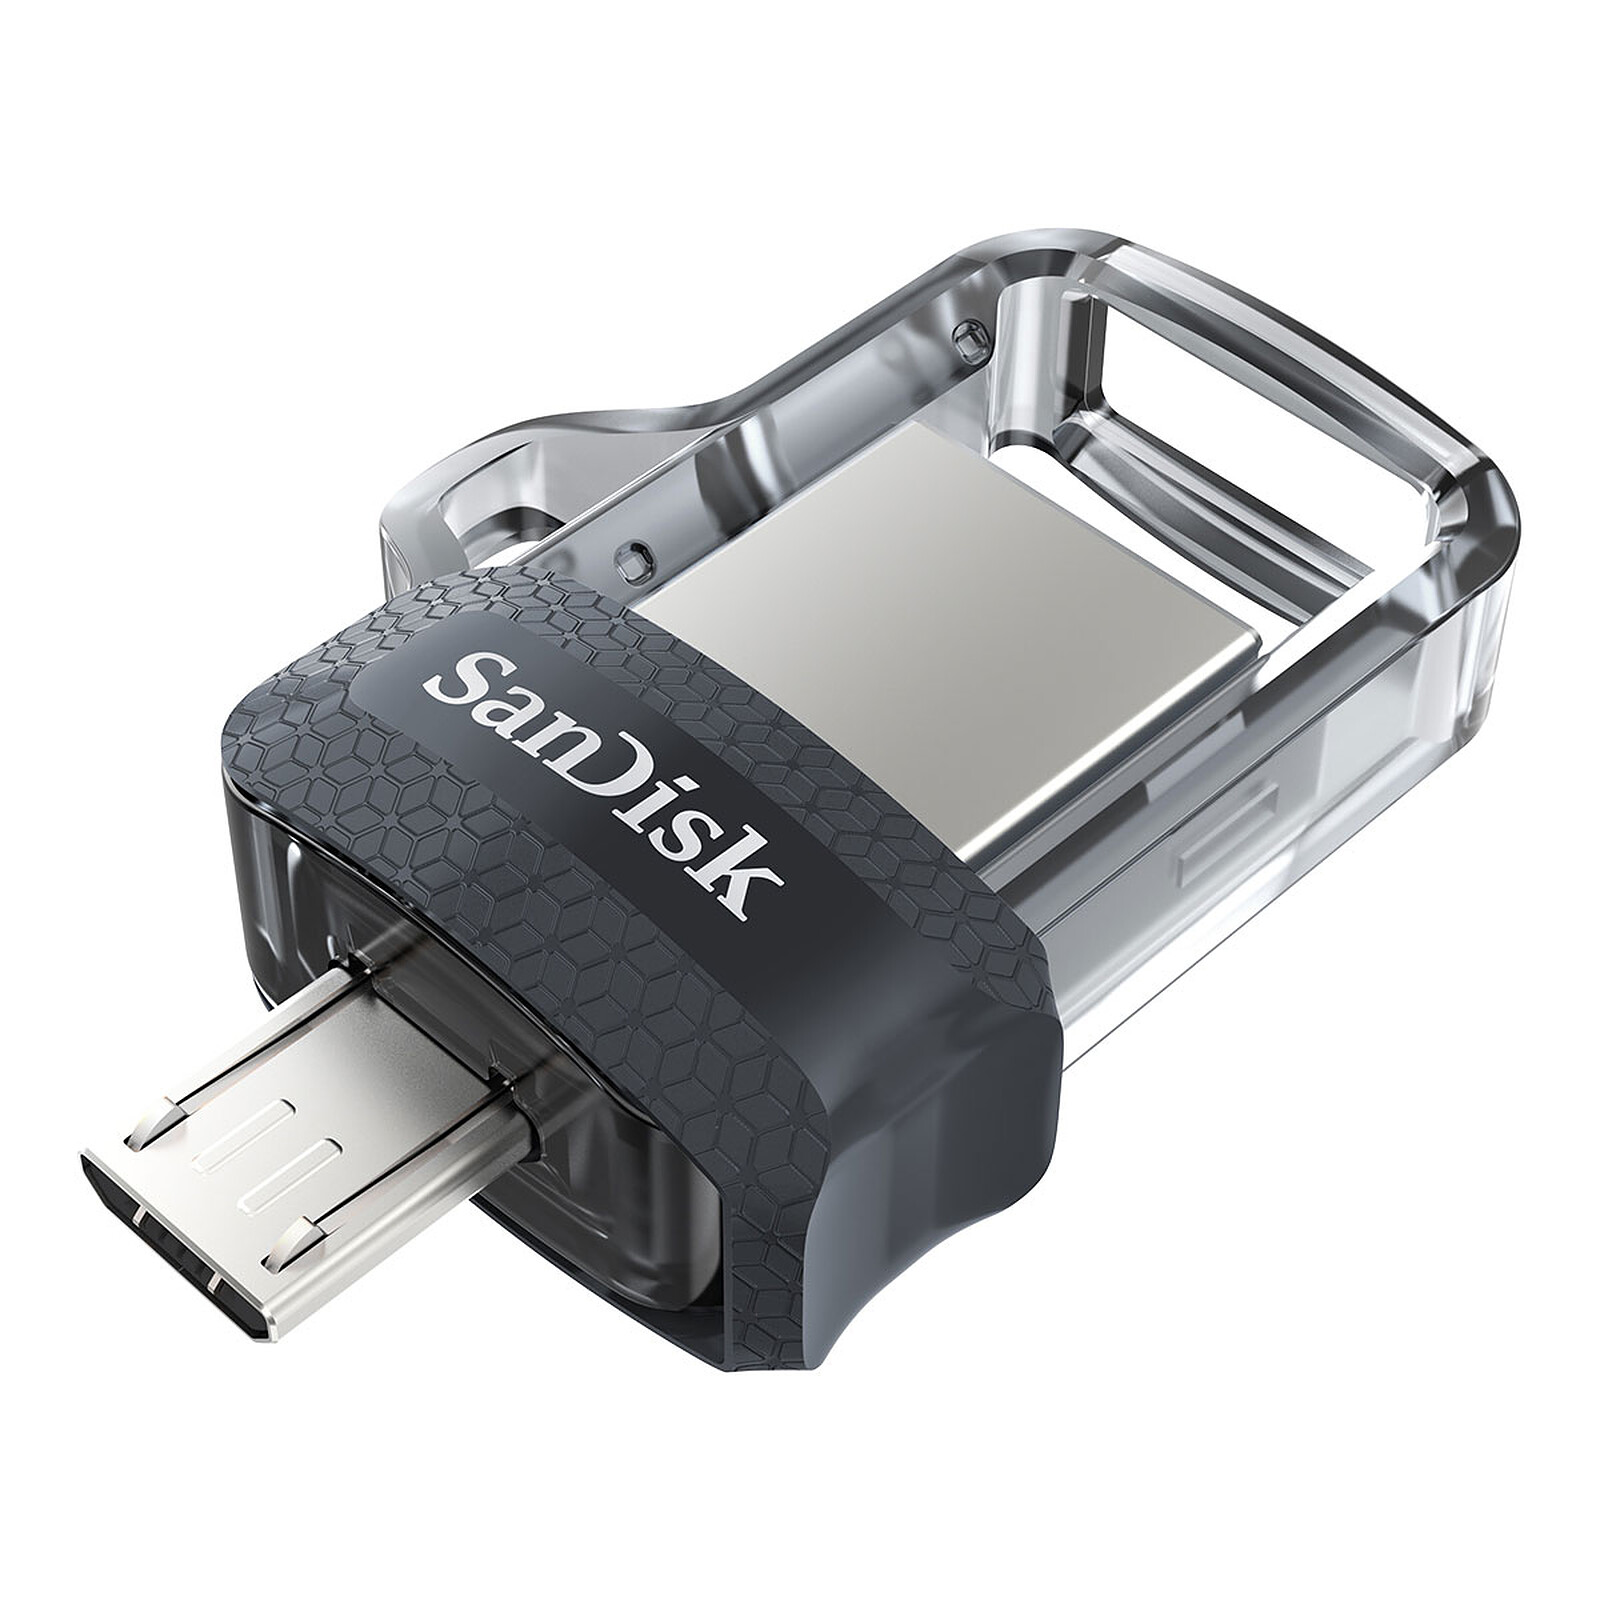 lUCKGOOD886 Cle USB 16 GO, [Lot de 2] USB Clef 16GO USB 2.0 Flash Drive  16GB Clé USB 16 GO pour Ordinateur Portable/PC/Voiture etc (2 Pack)